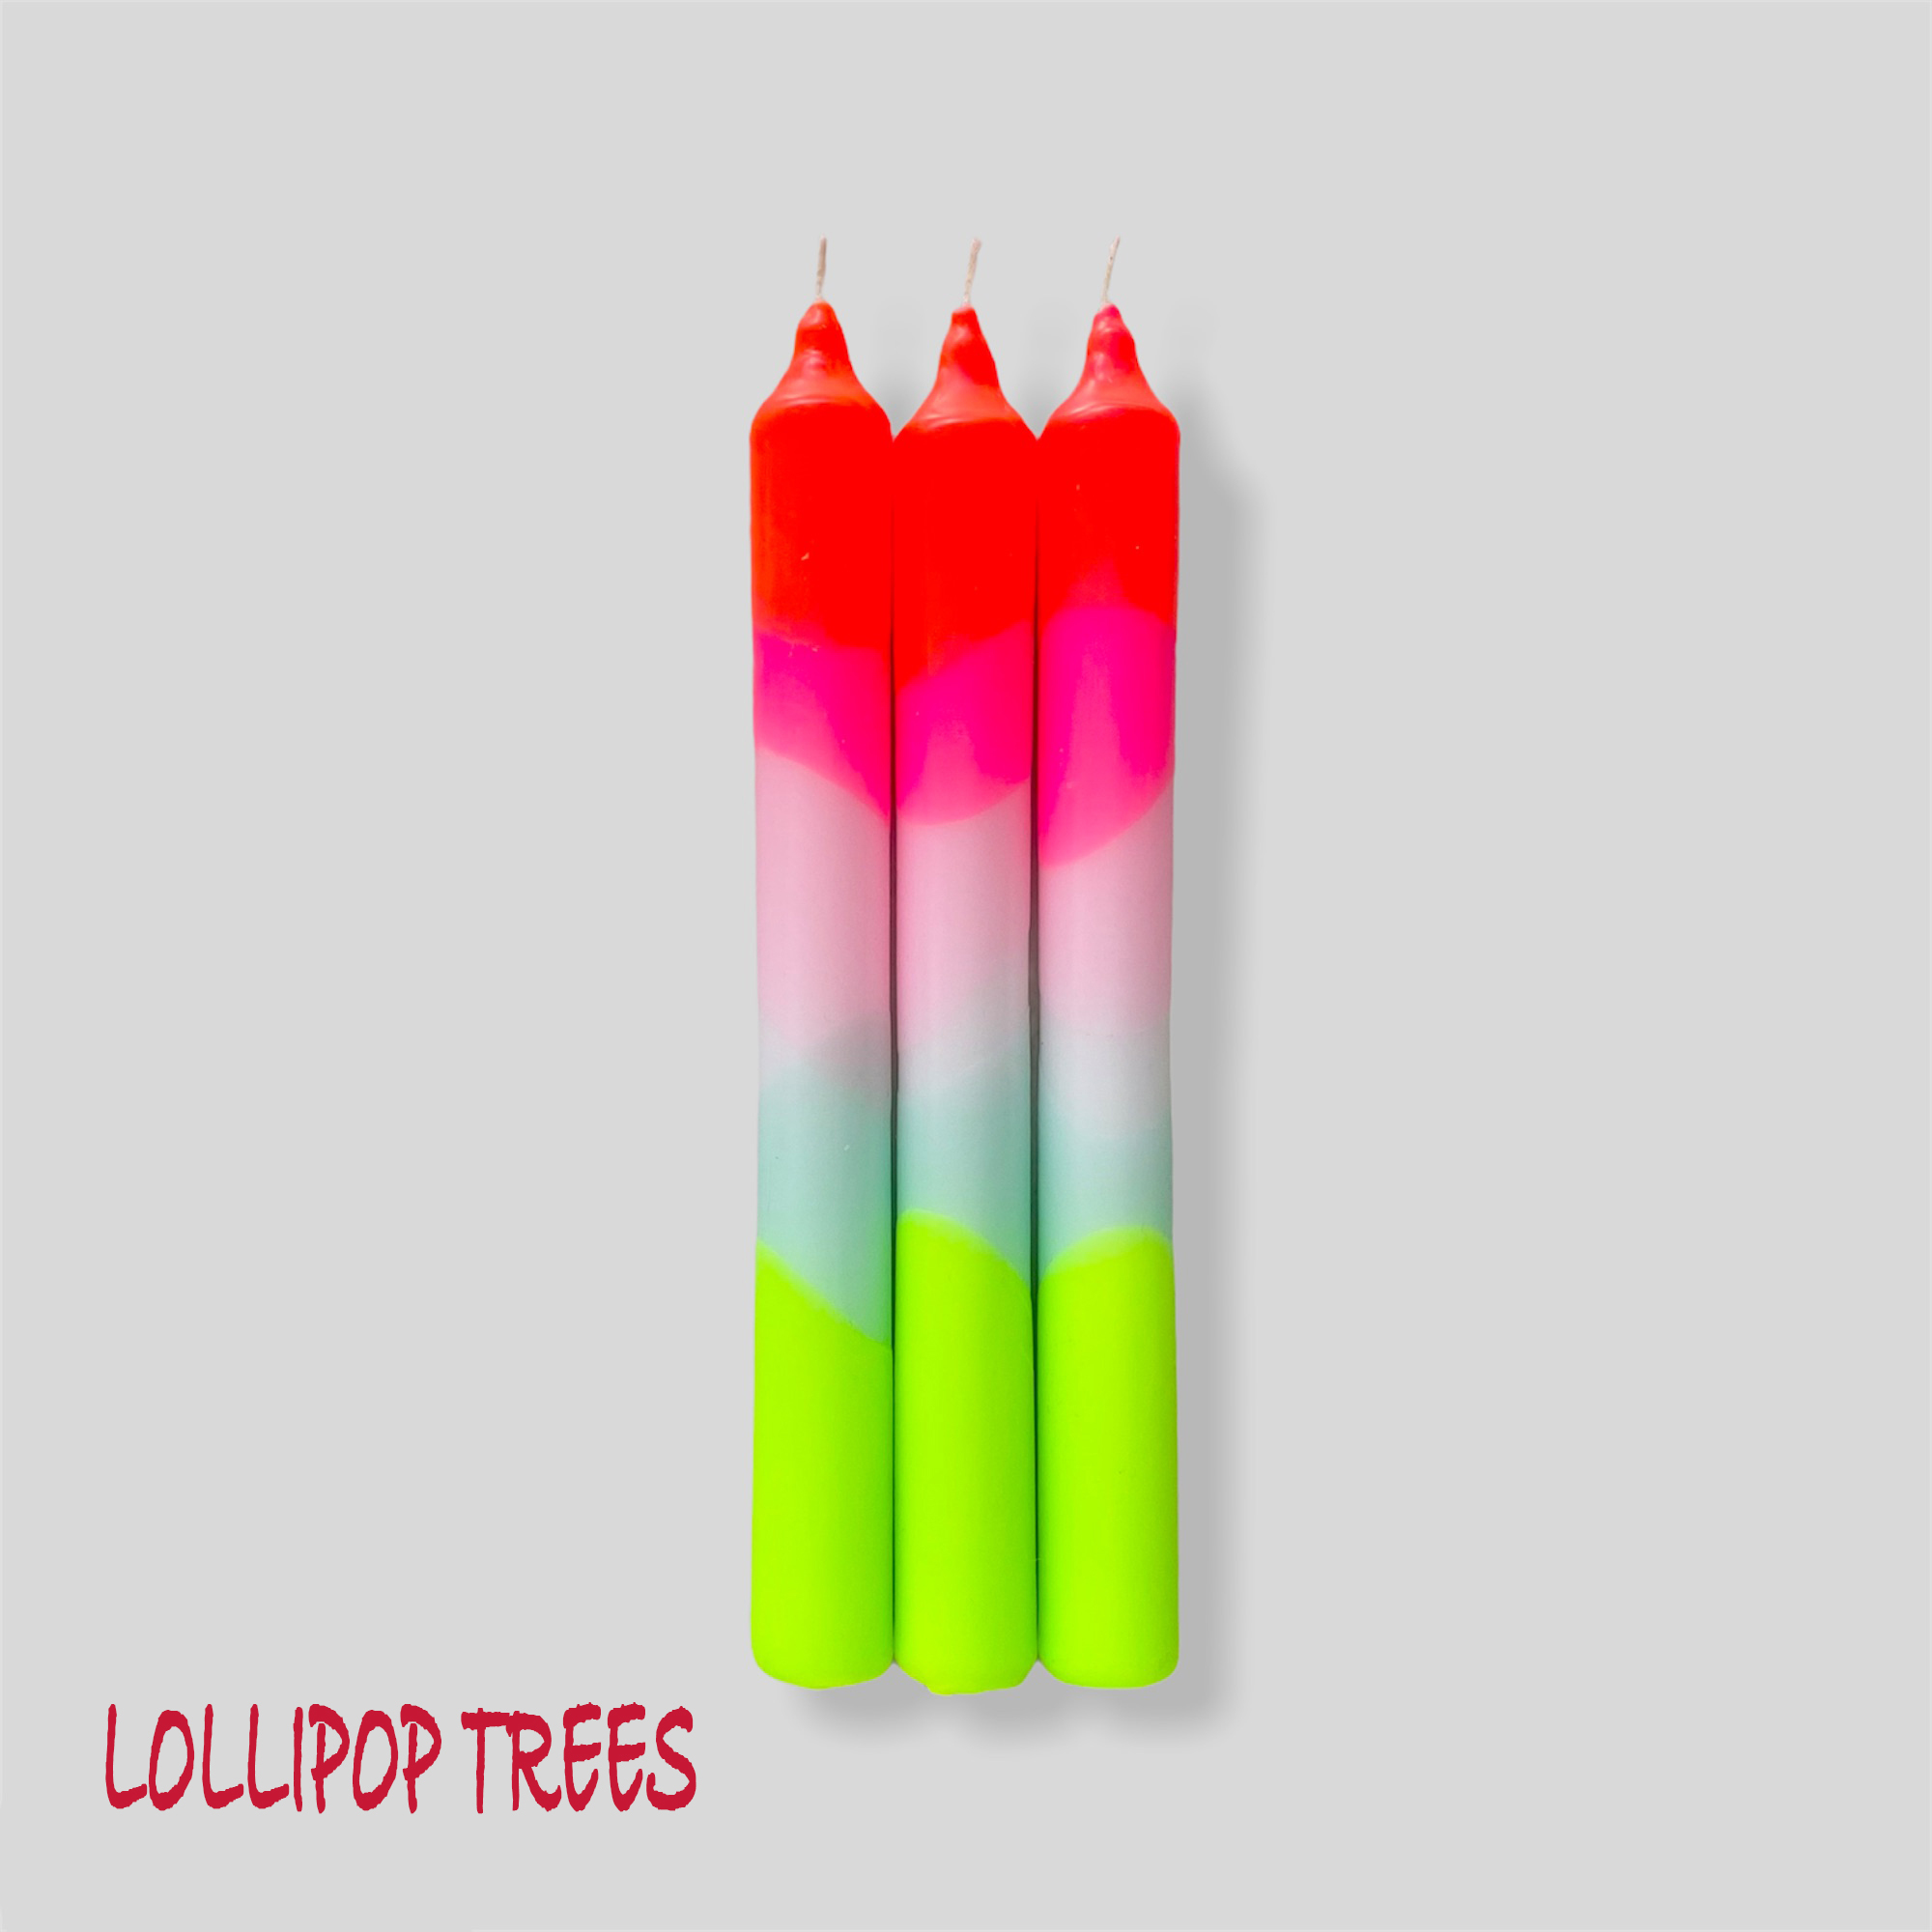 Web lollipop trees new